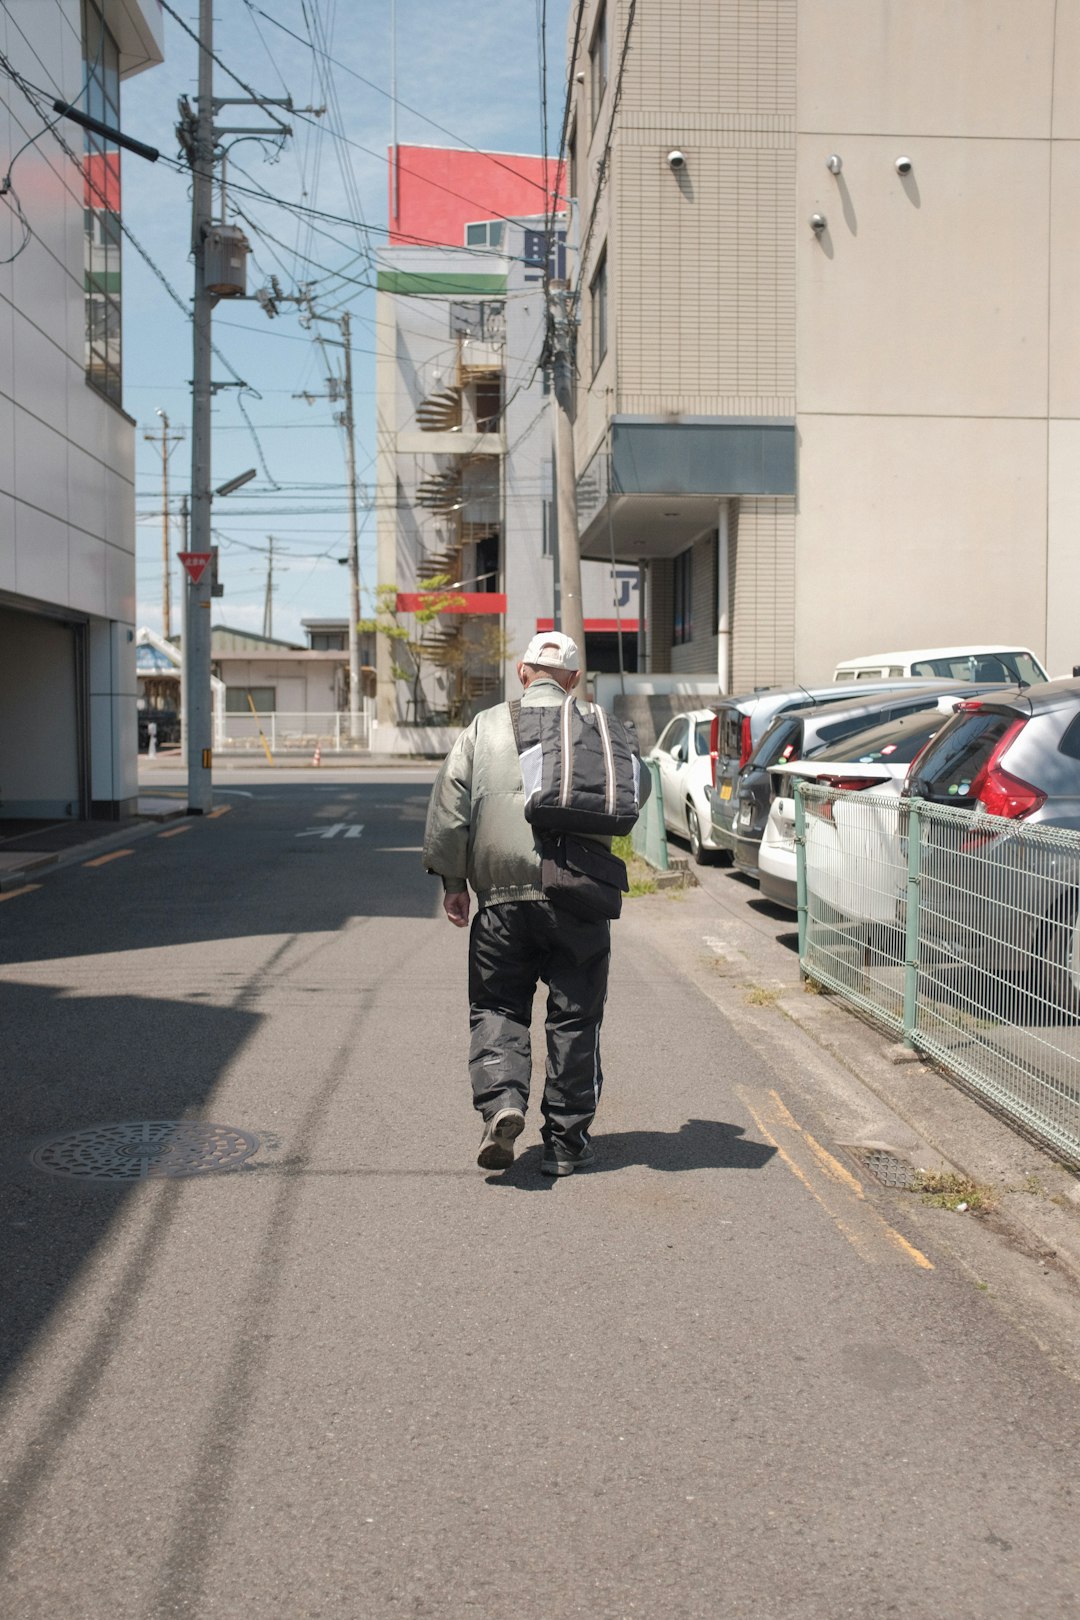 man in gray jacket walking on sidewalk during daytime